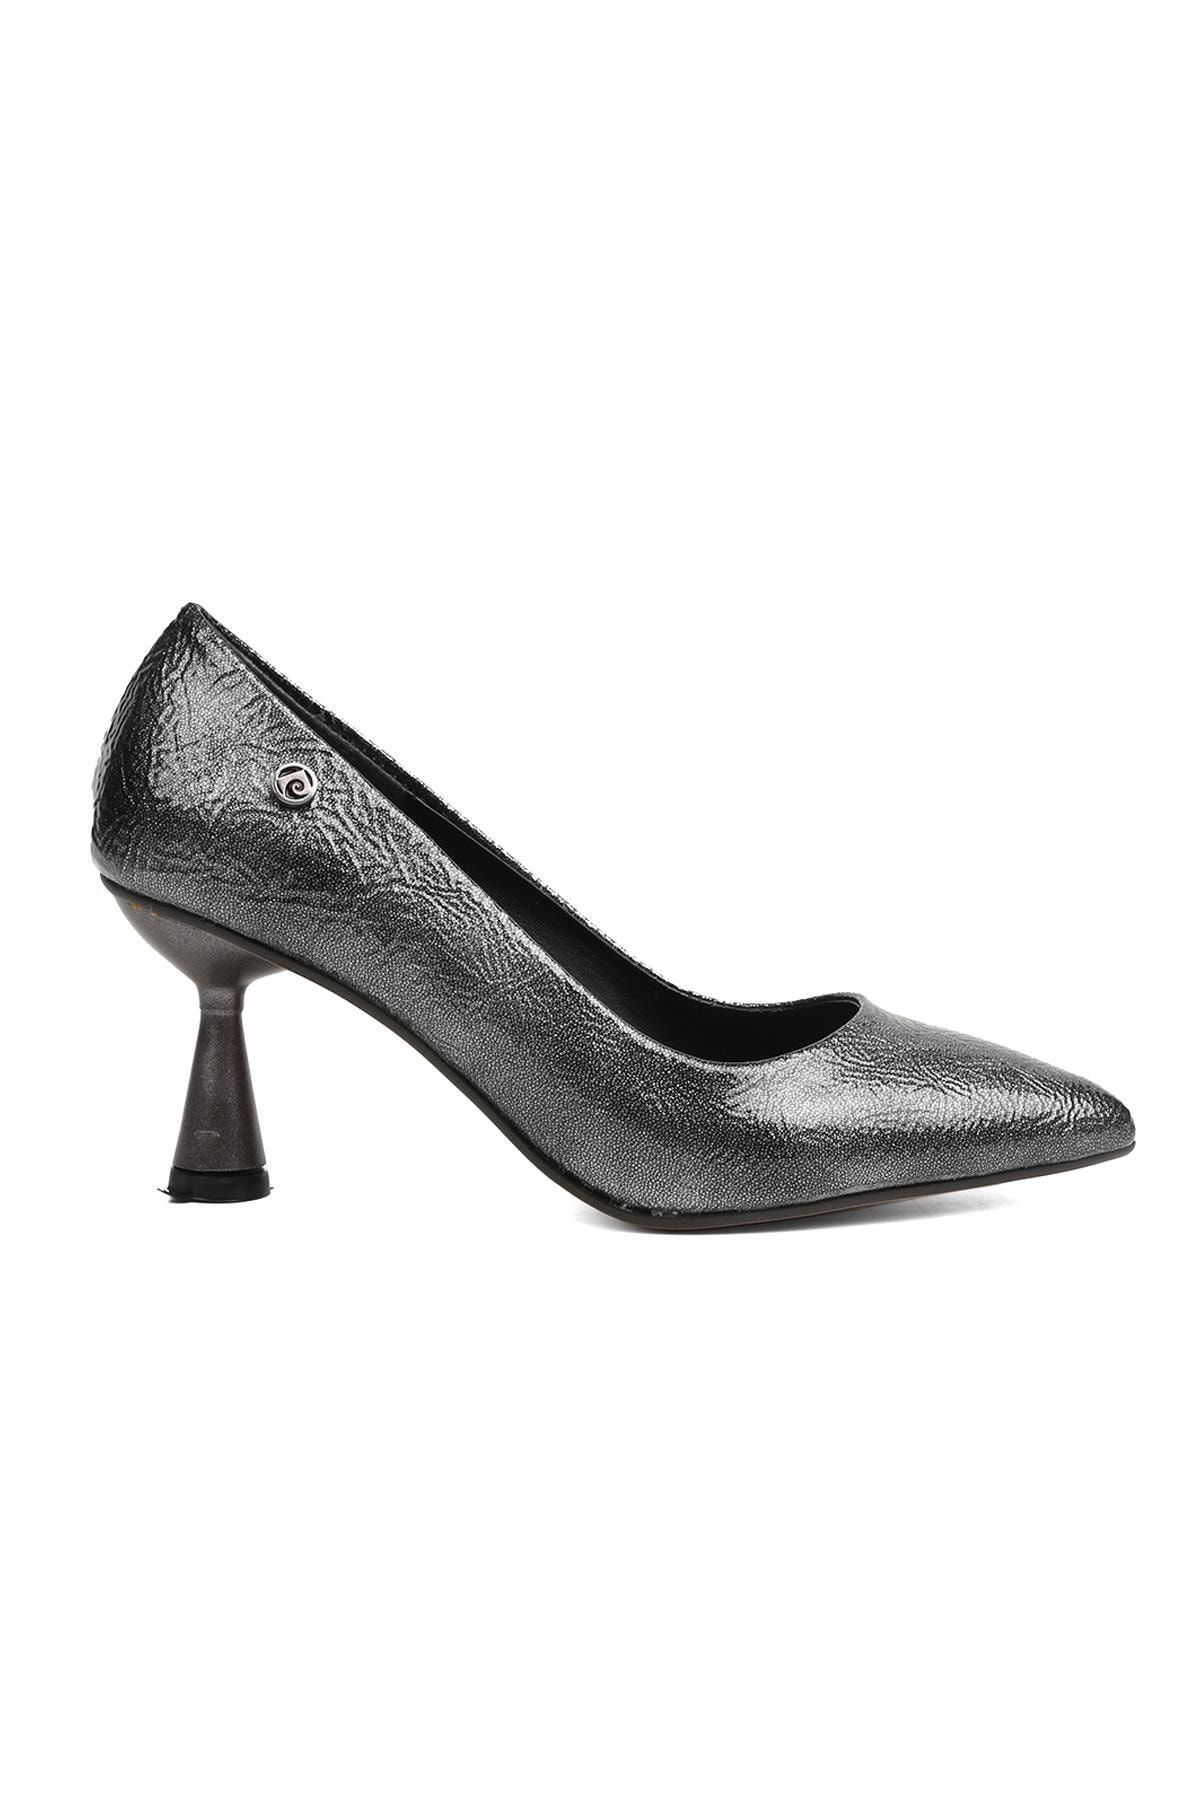 Pierre Cardin ® | Pc-51642 - 3478 Platin Kırısık - Kadın Topuklu Ayakkabı